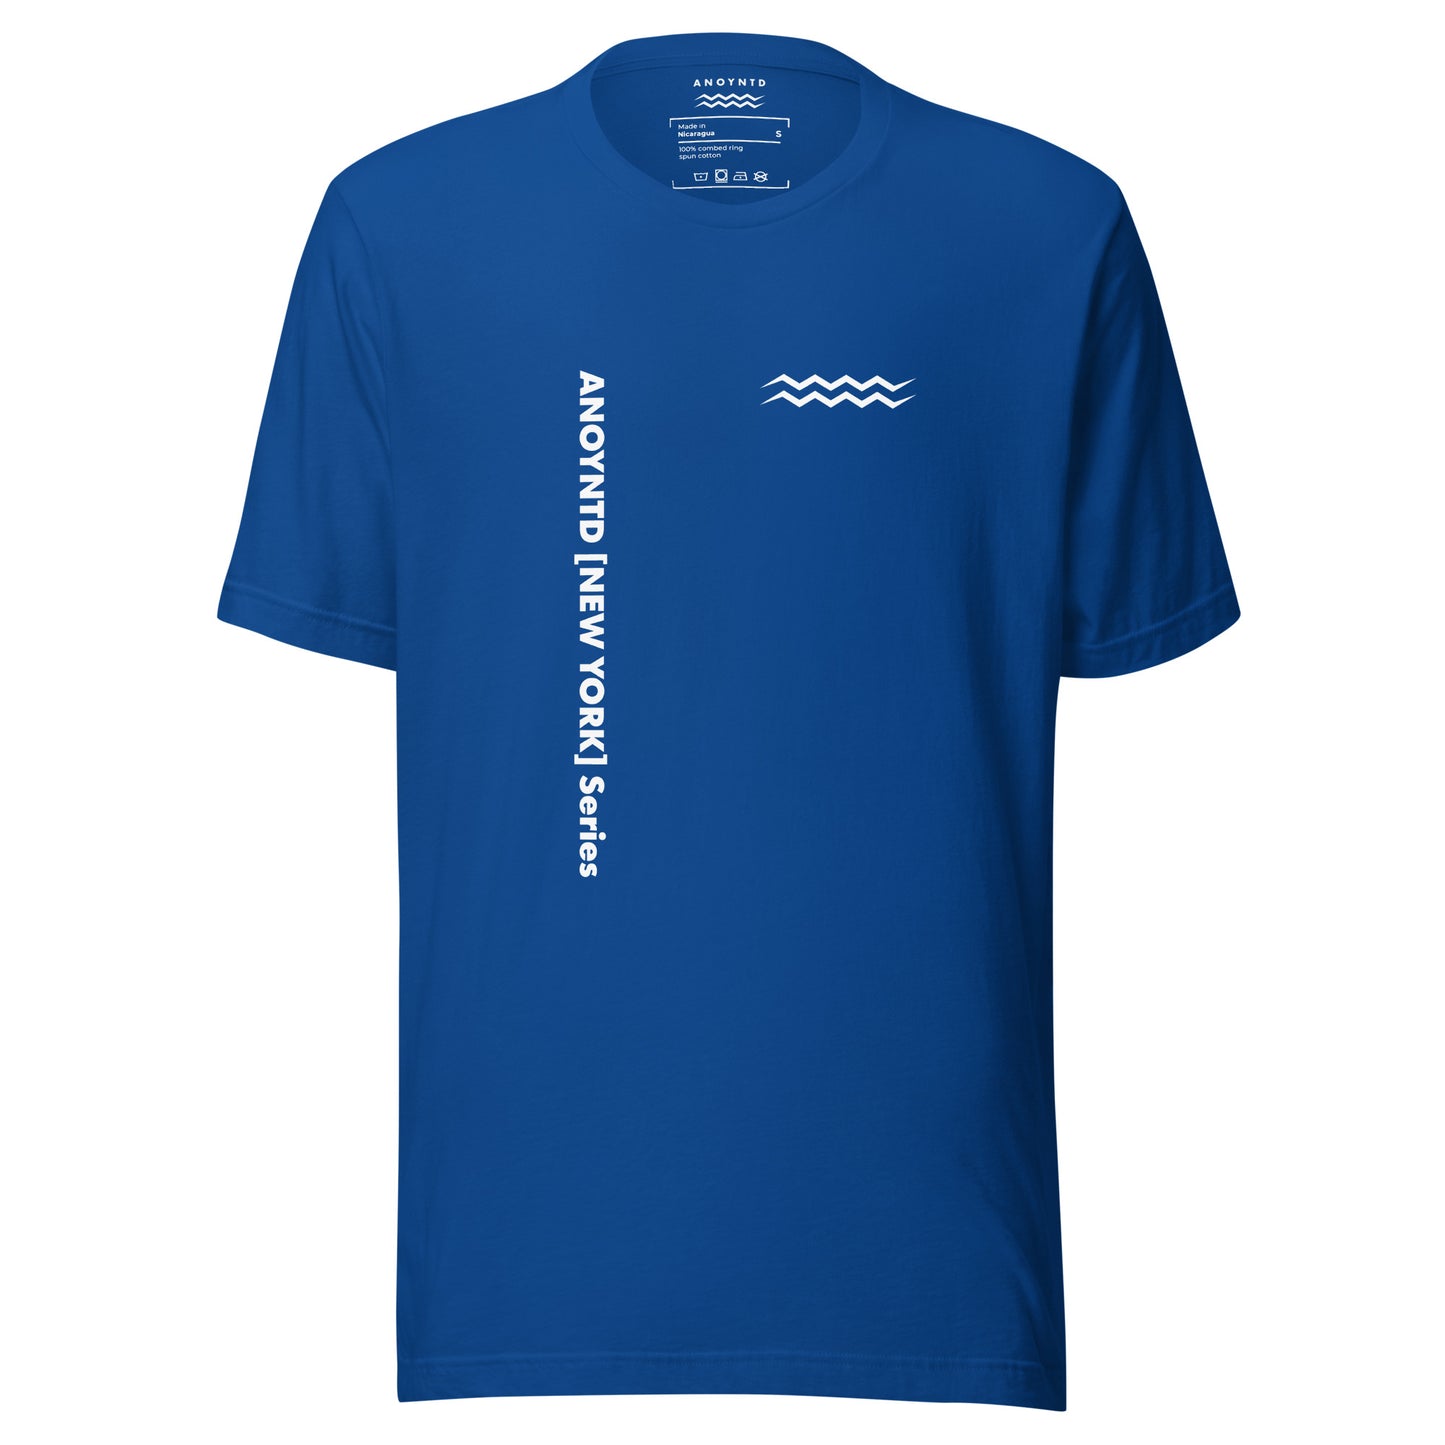 ANOYNTD [NY] Series Unisex t-shirt